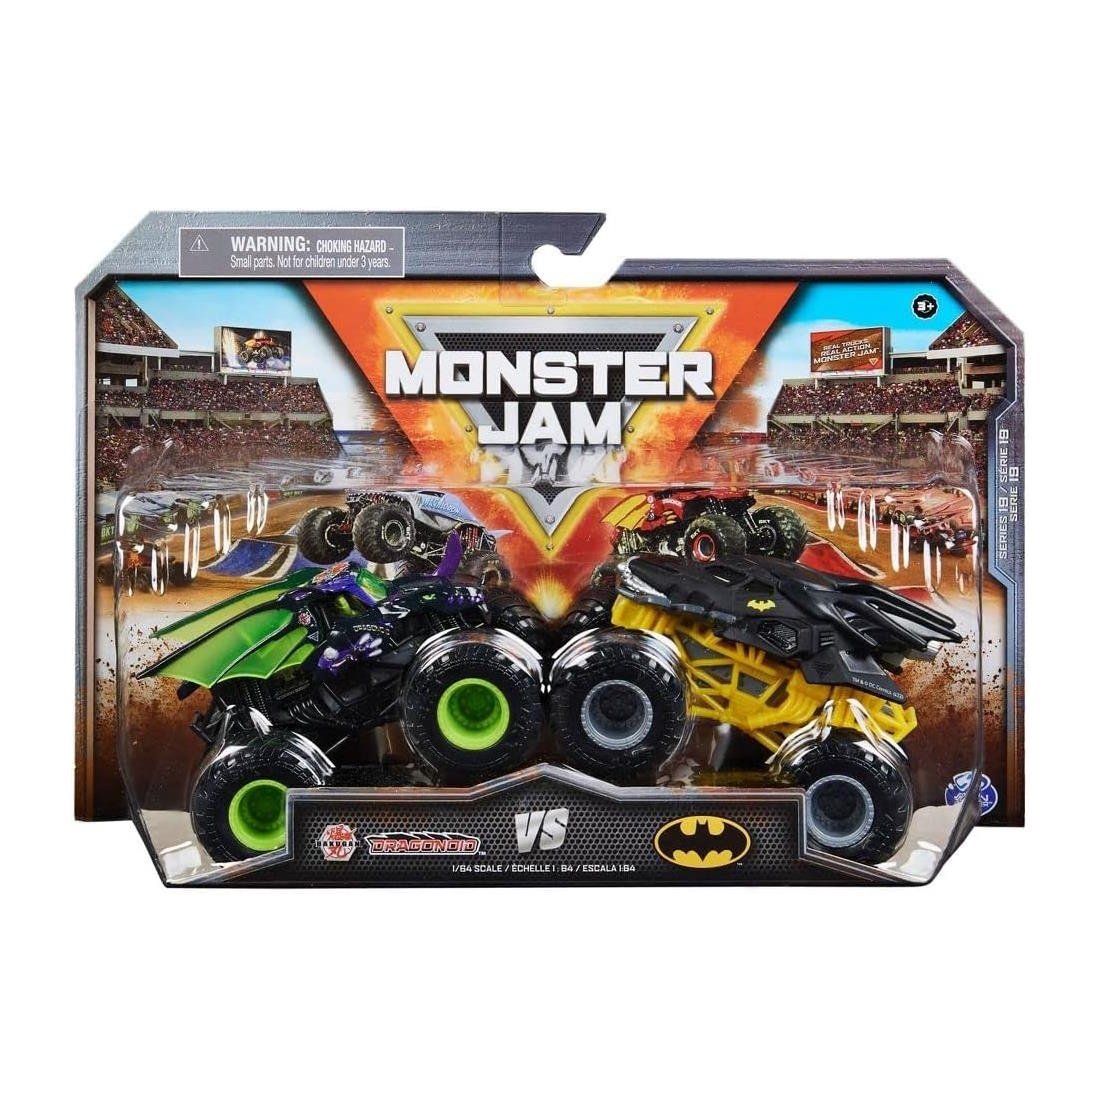 Set Monster JAM VS - Modelos escala 1:64 - Infantil - Spin Master - COMERCIAL BELSAN -